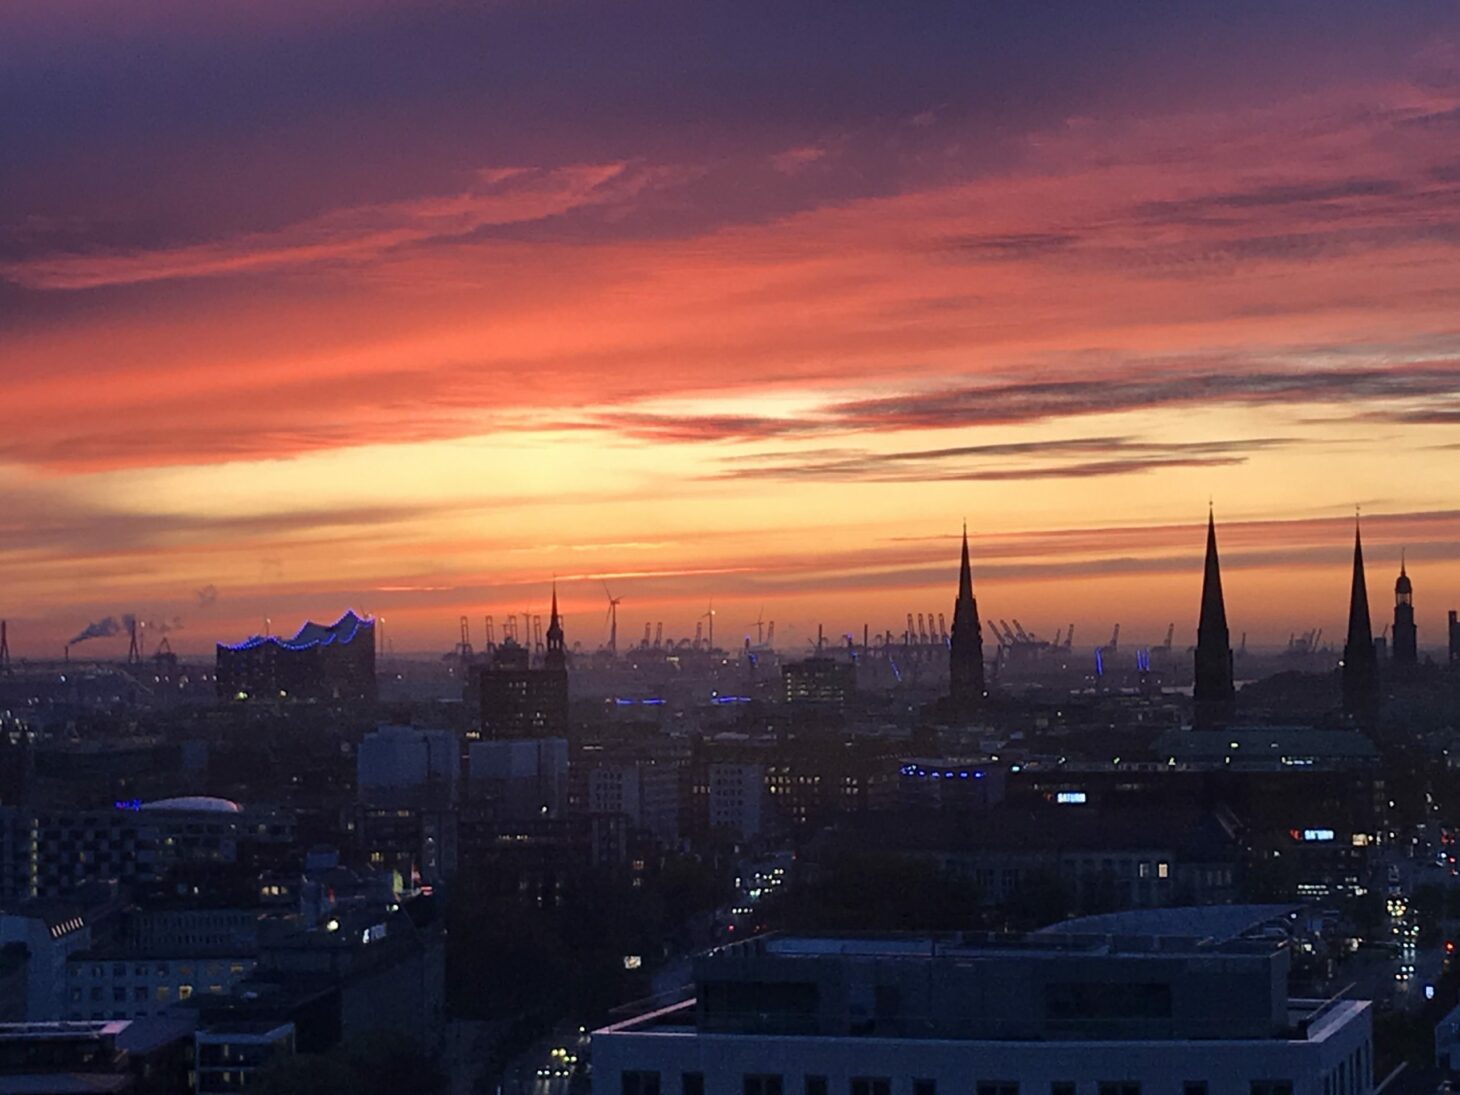 Bild von einem Sonnenuntergang und der Aussicht auf Hamburg, valantic Niederlassung Business Analytics Hamburg